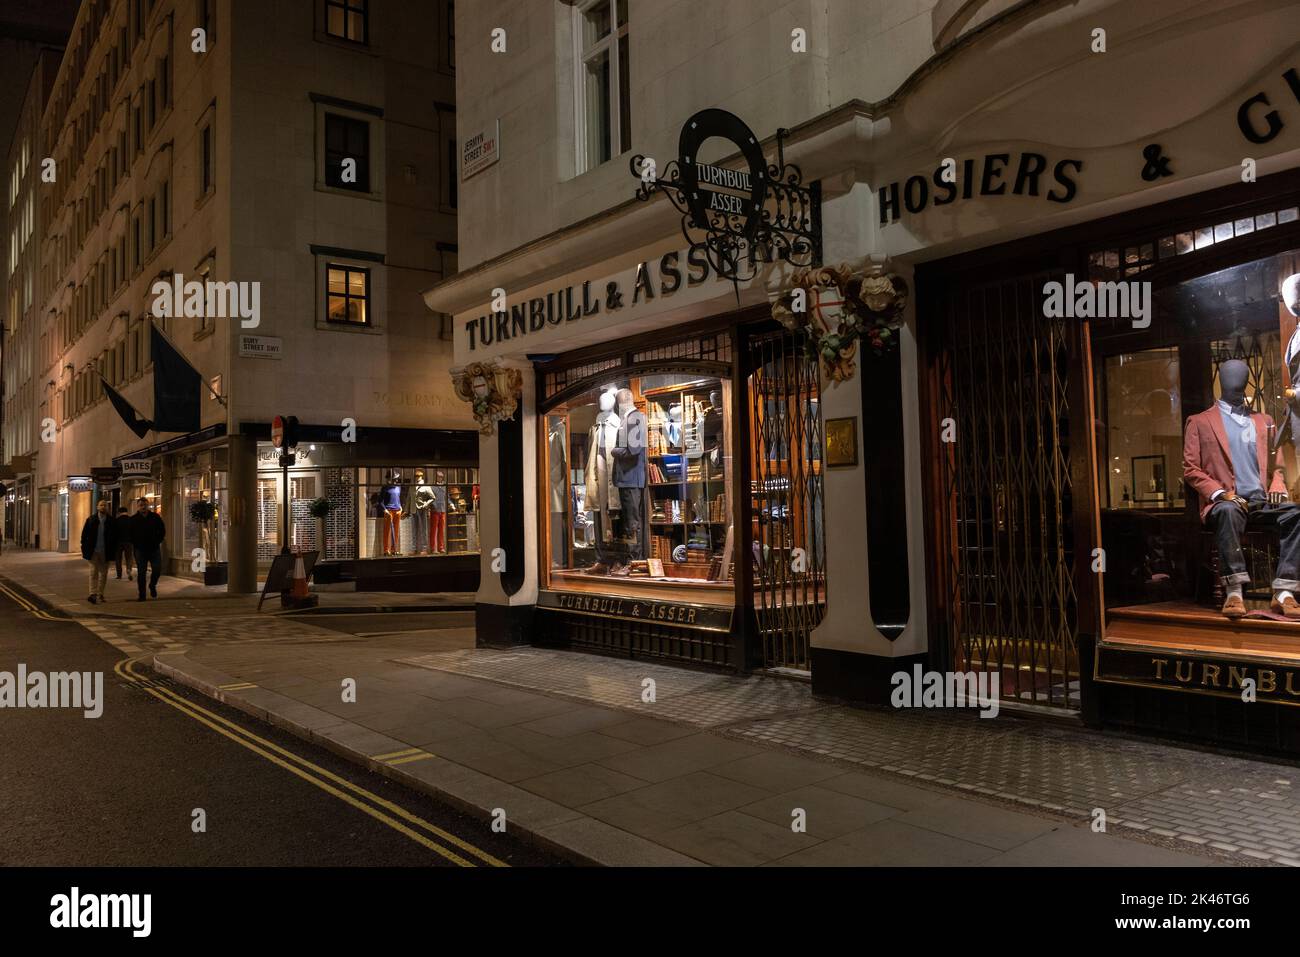 Turnbull & Asser, negozio di punta su Jermyn Street, personal shirtmaker King Charles III, costruttore di shirtmaker personalizzato fondato nel 1885, Londra, Regno Unito Foto Stock